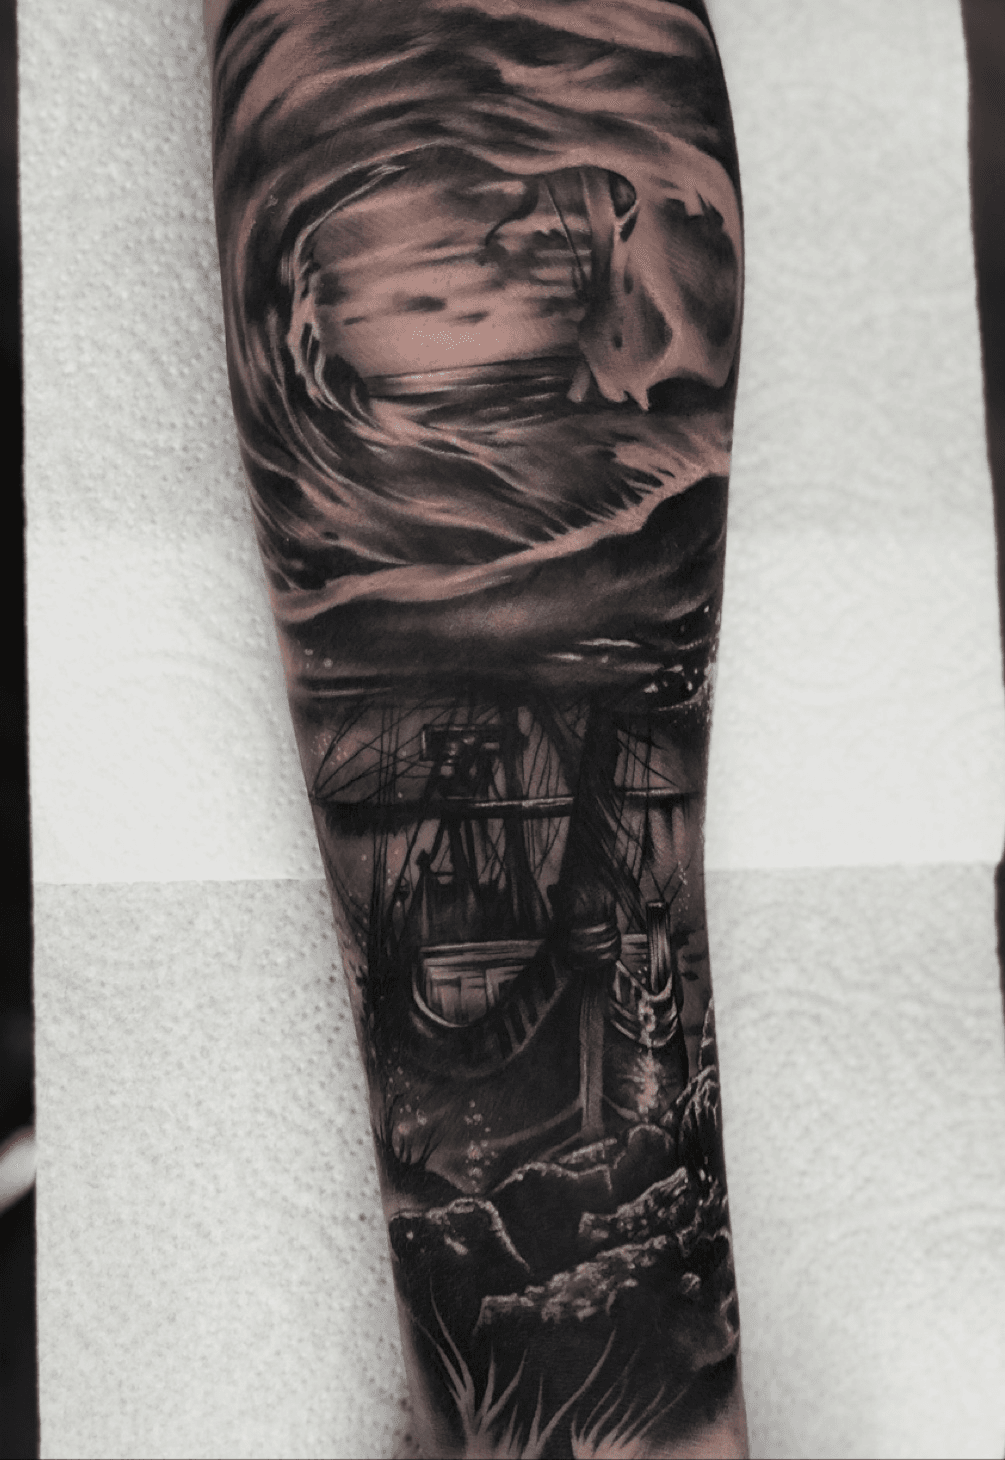 shipwreck tattoo drawing